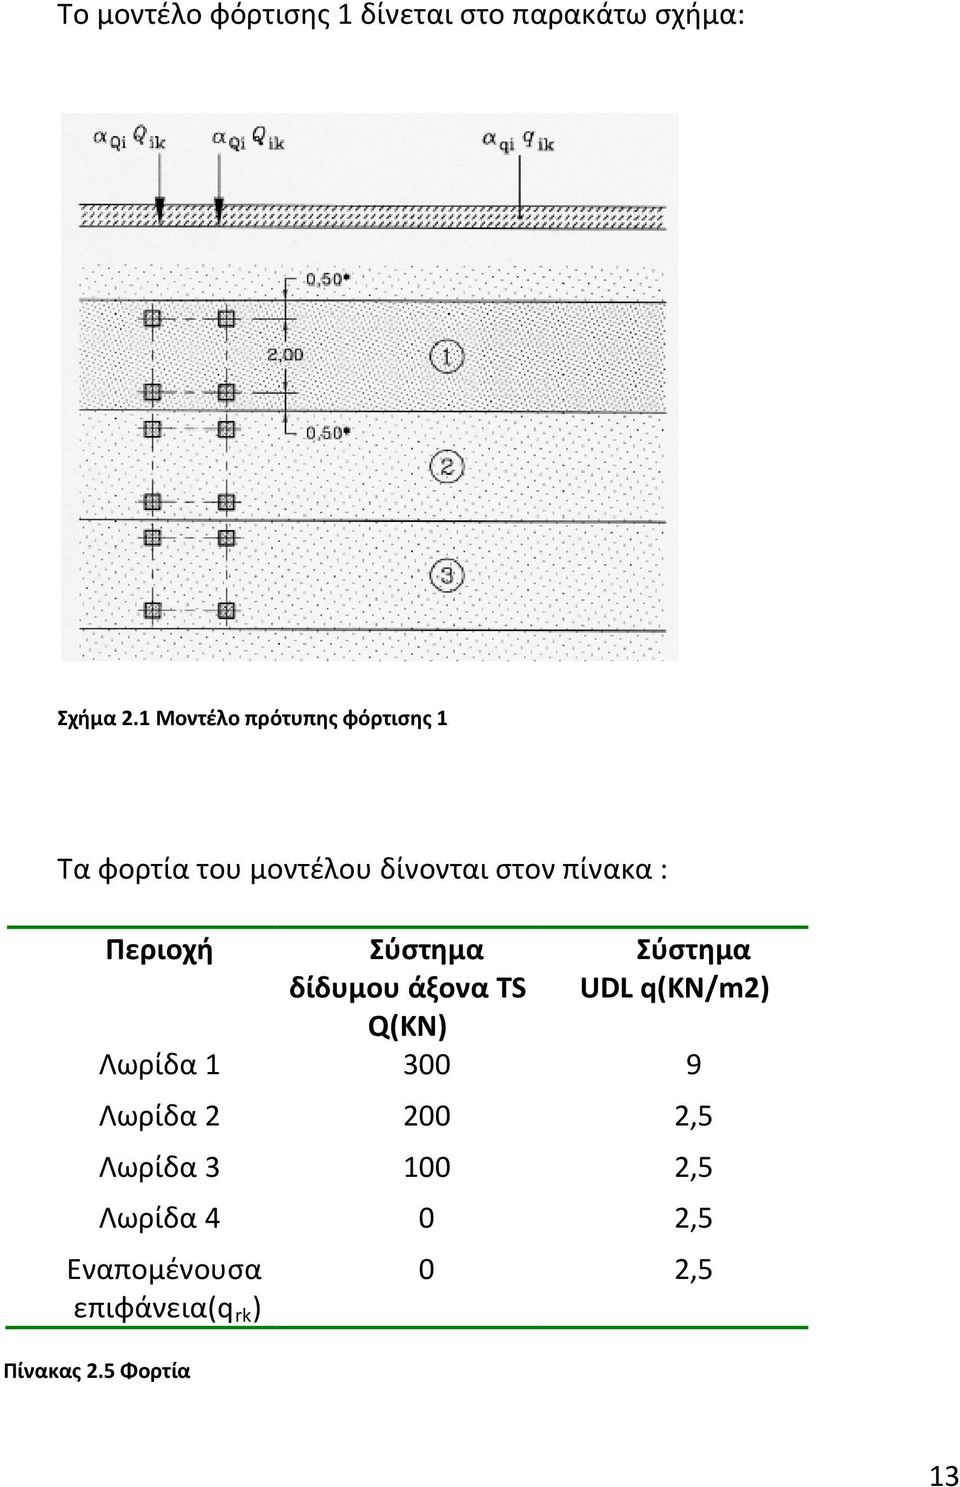 Περιοχή Σύστημα δίδυμου άξονα TS Q(ΚΝ) Σύστημα UDL q(kn/m2) Λωρίδα 1 300 9